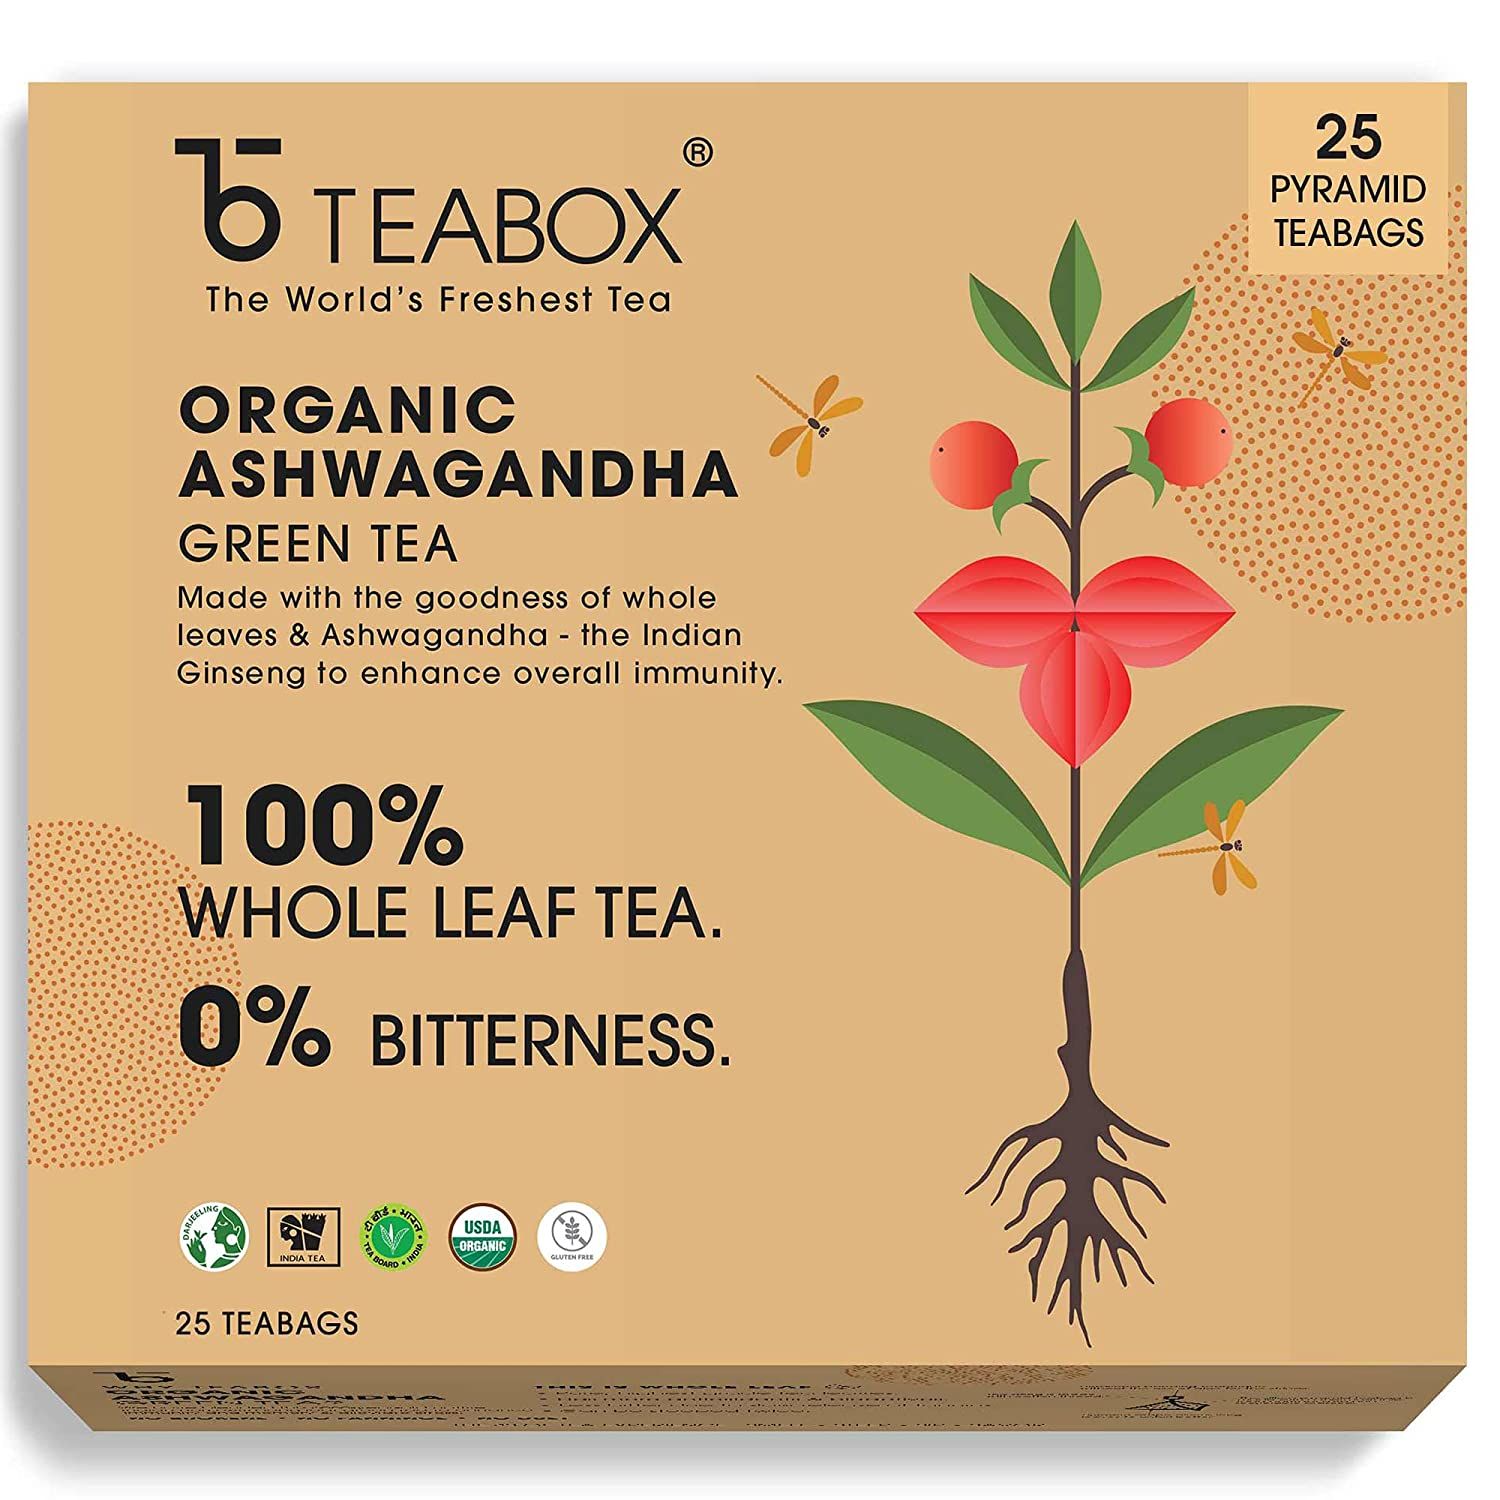 Teabox Organic Ashwagandha Green Tea Image